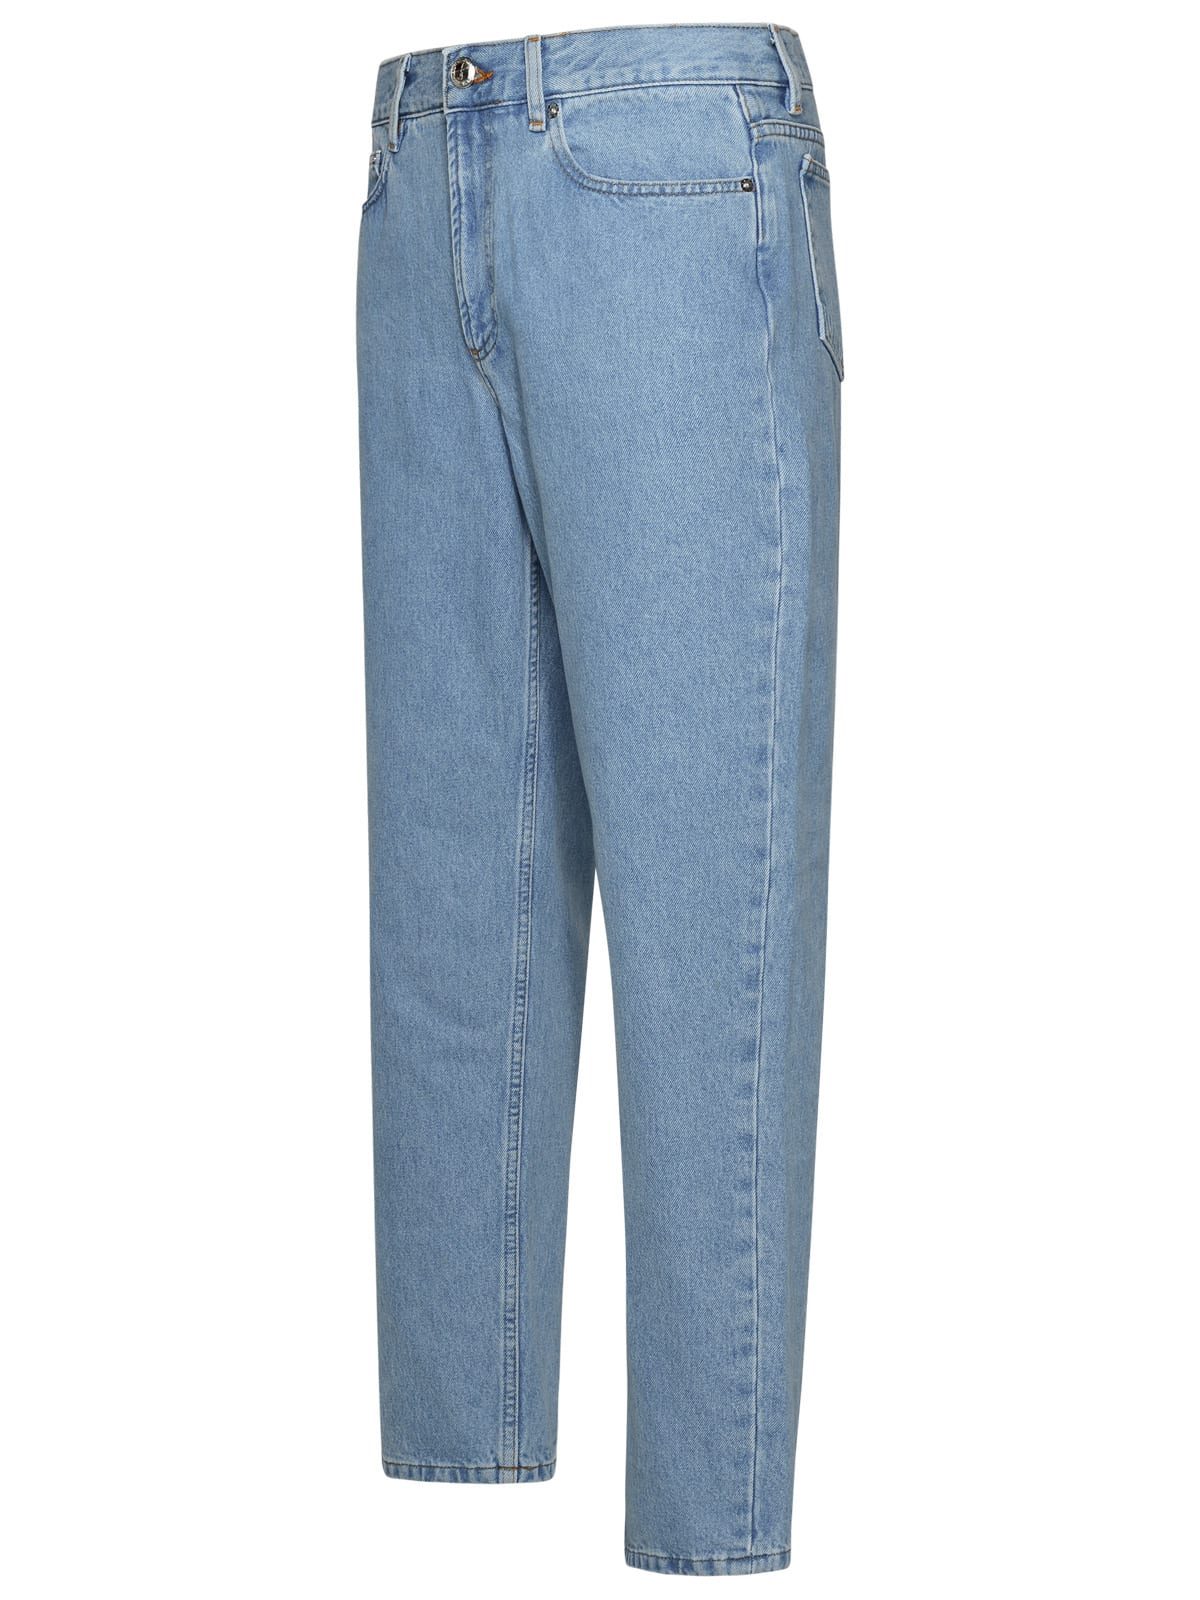 Shop Apc Martin Light Blue Cotton Jeans